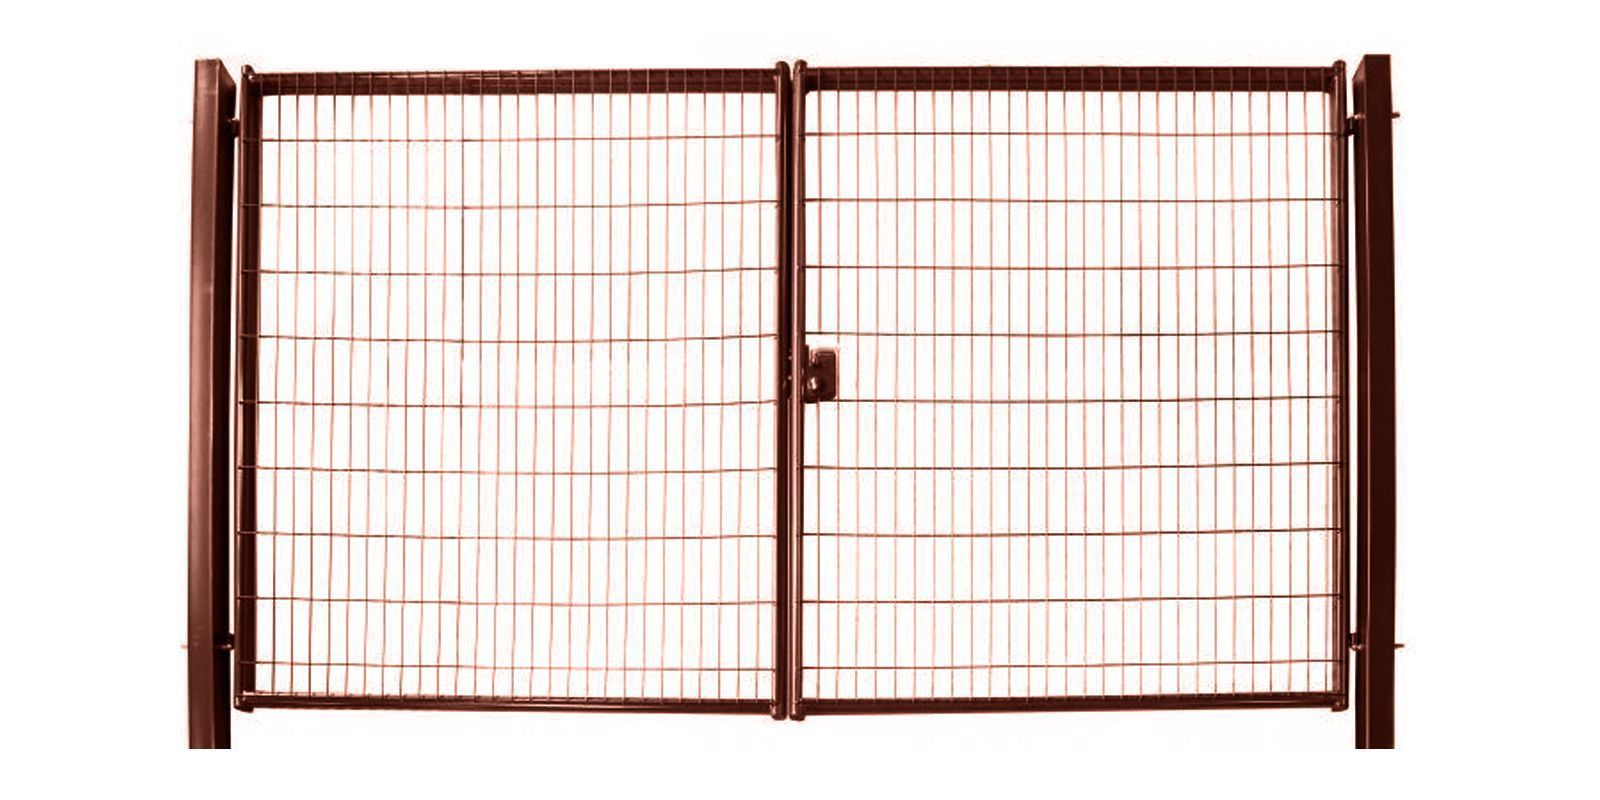 Ворота для панельного ограждения Medium, 1,73 м, ширина 3,5 м, изображение, фото | Сталь ТД